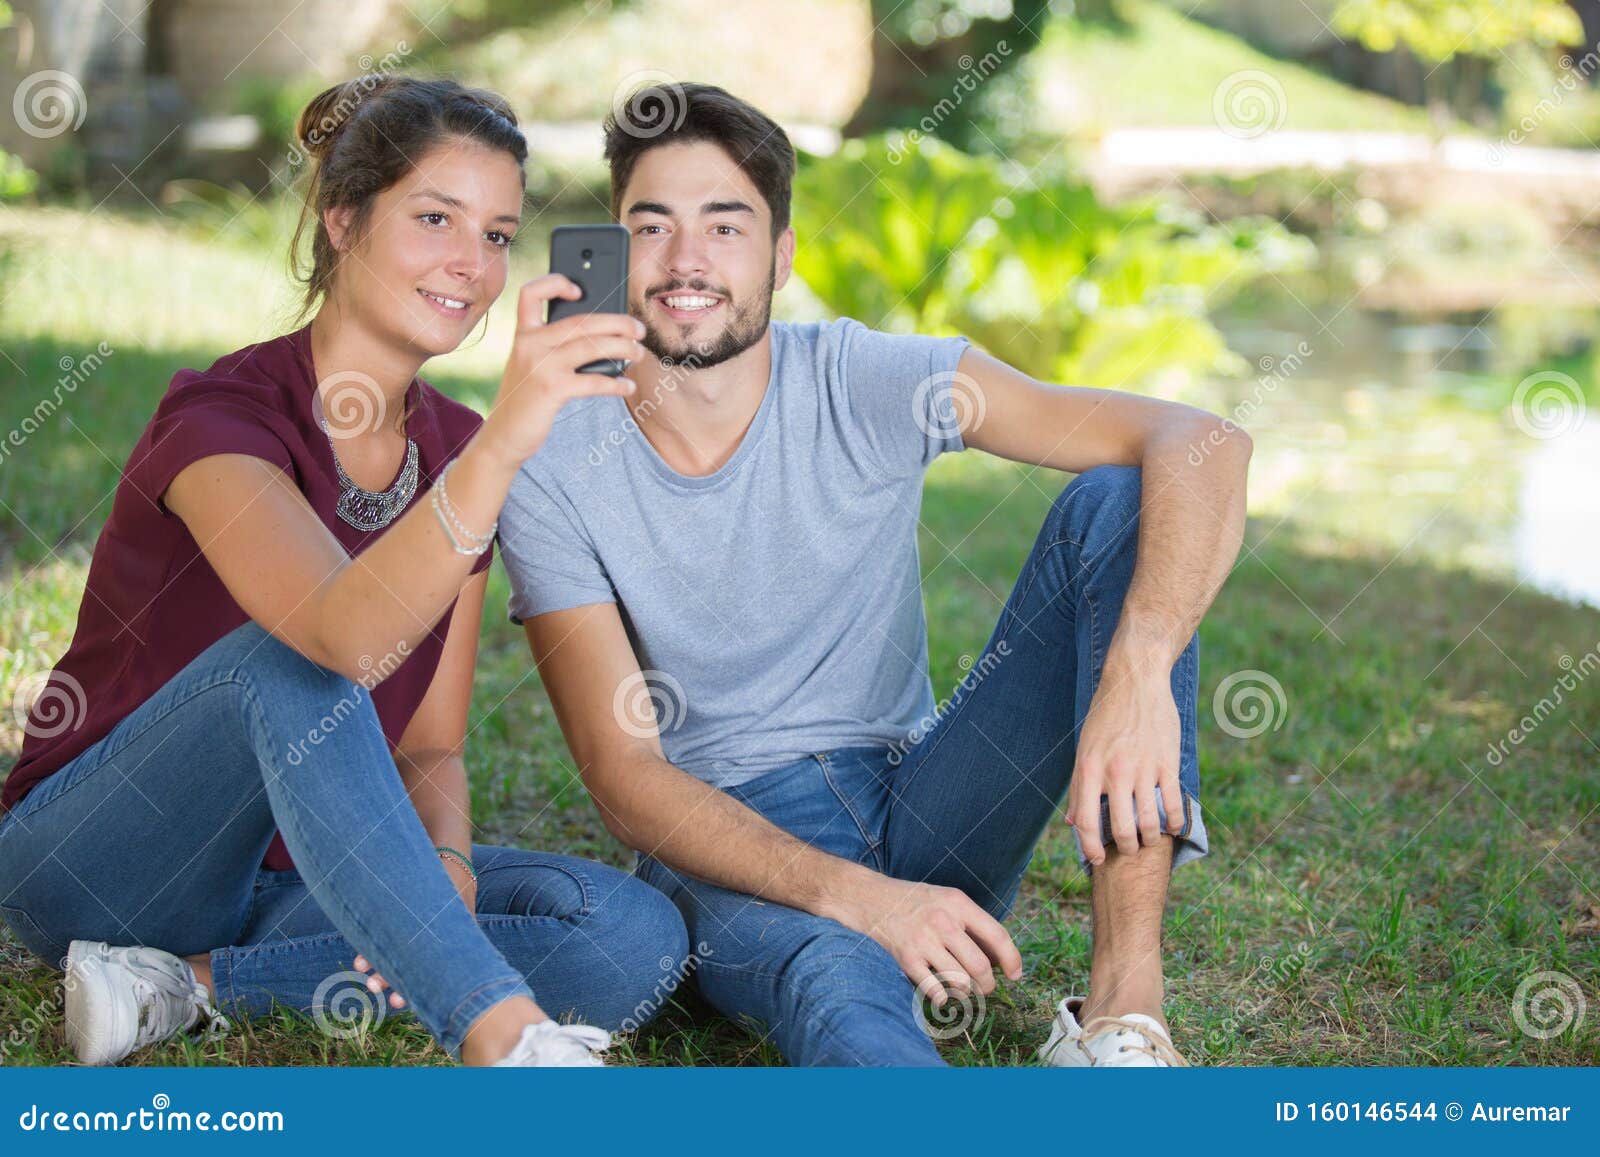 Un Jeune Couple Se Selfie Dans Un Parc Photo Stock Image Du Vacances